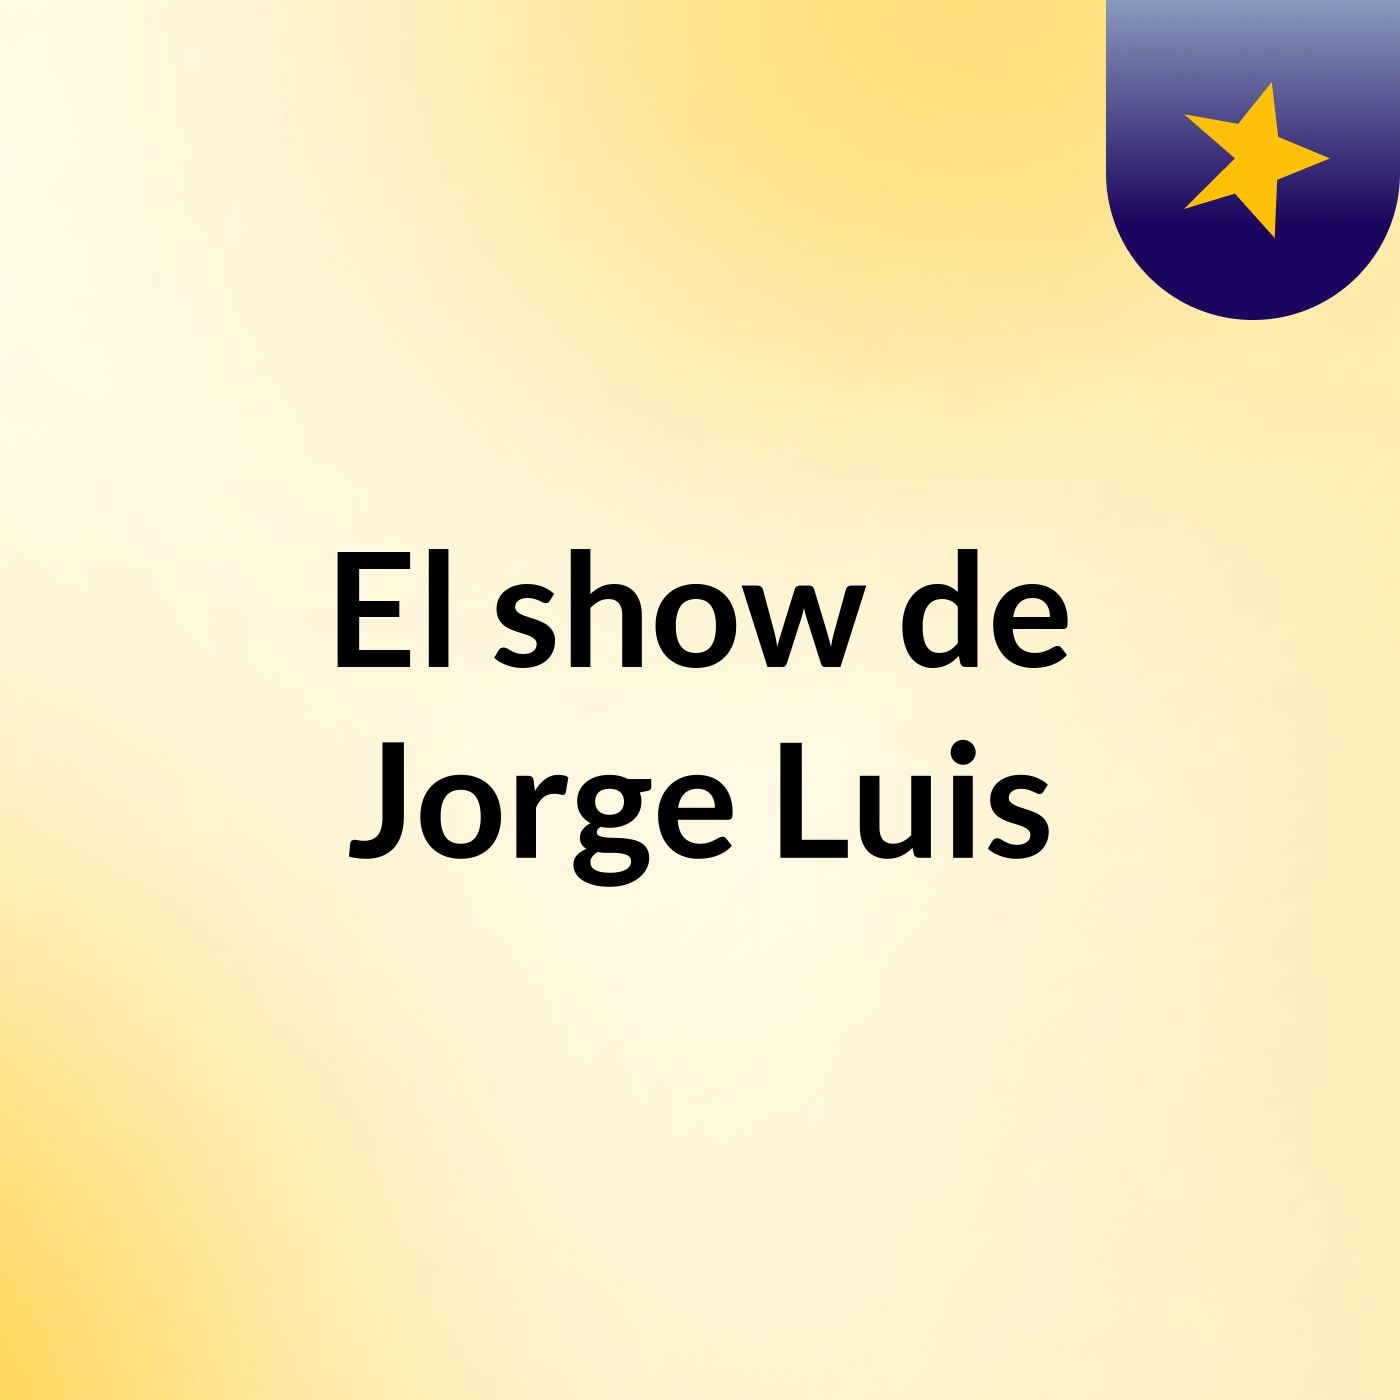 El show de Jorge Luis